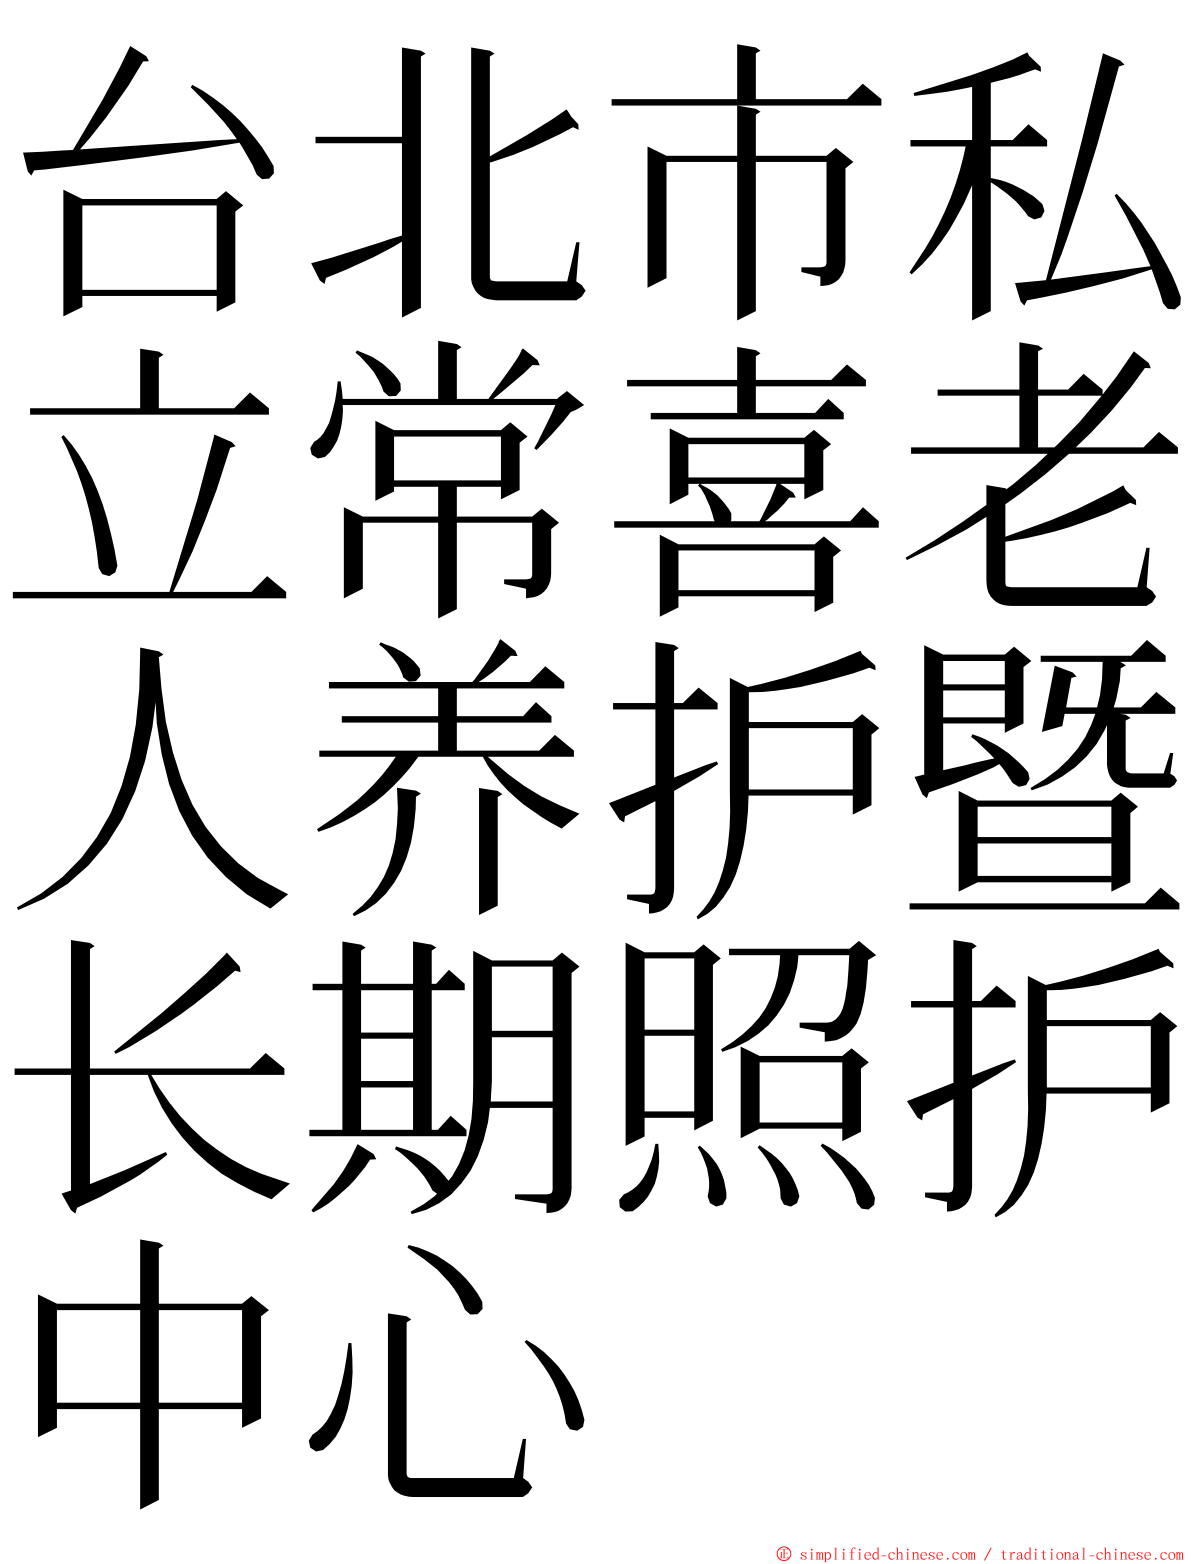 台北市私立常喜老人养护暨长期照护中心 ming font